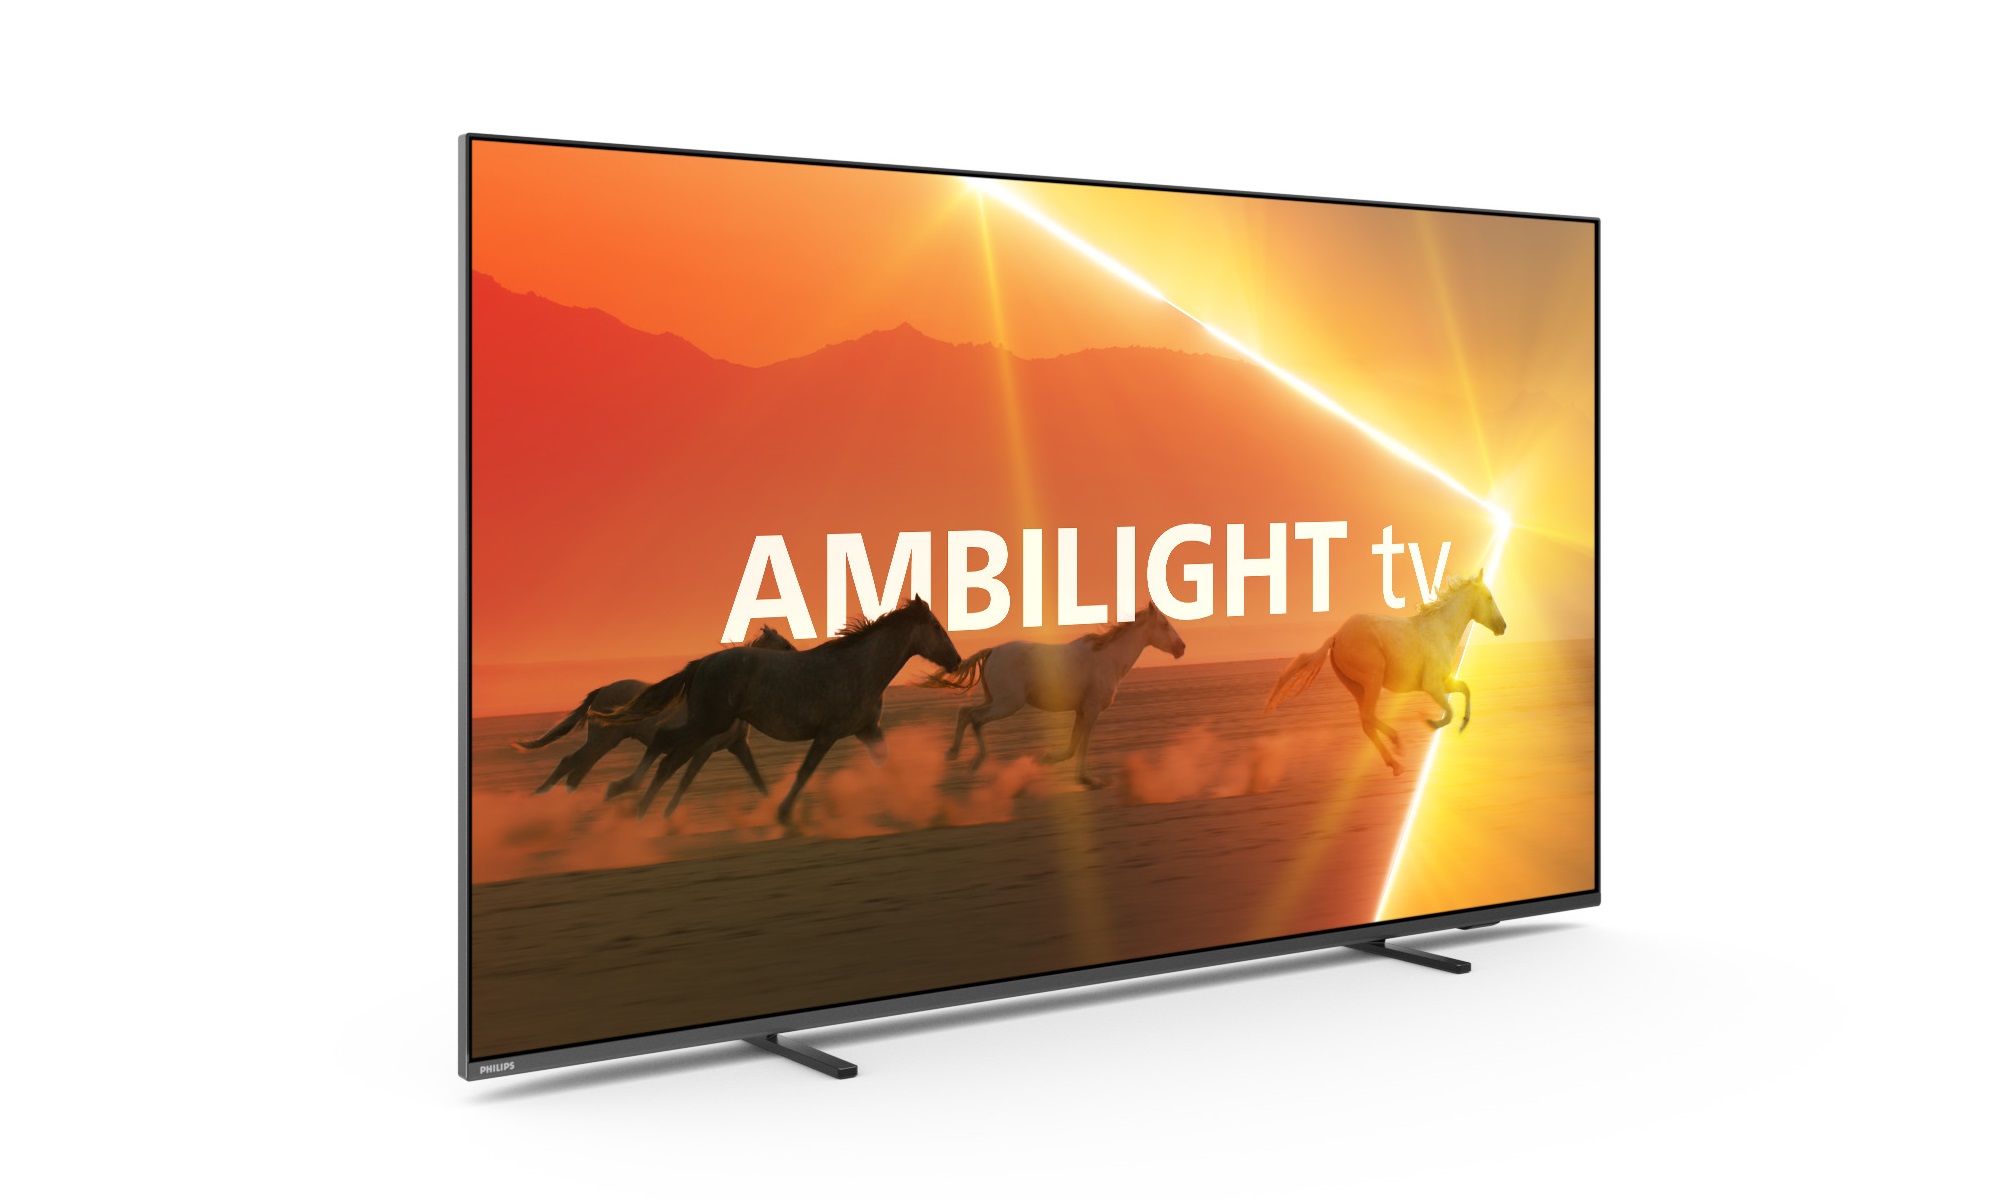 Aumentá tu experiencia con los nuevos Android TV Philips con Ambilight! 💣  Dejate atrapar por la tecnología Ambilight. Philips, the…